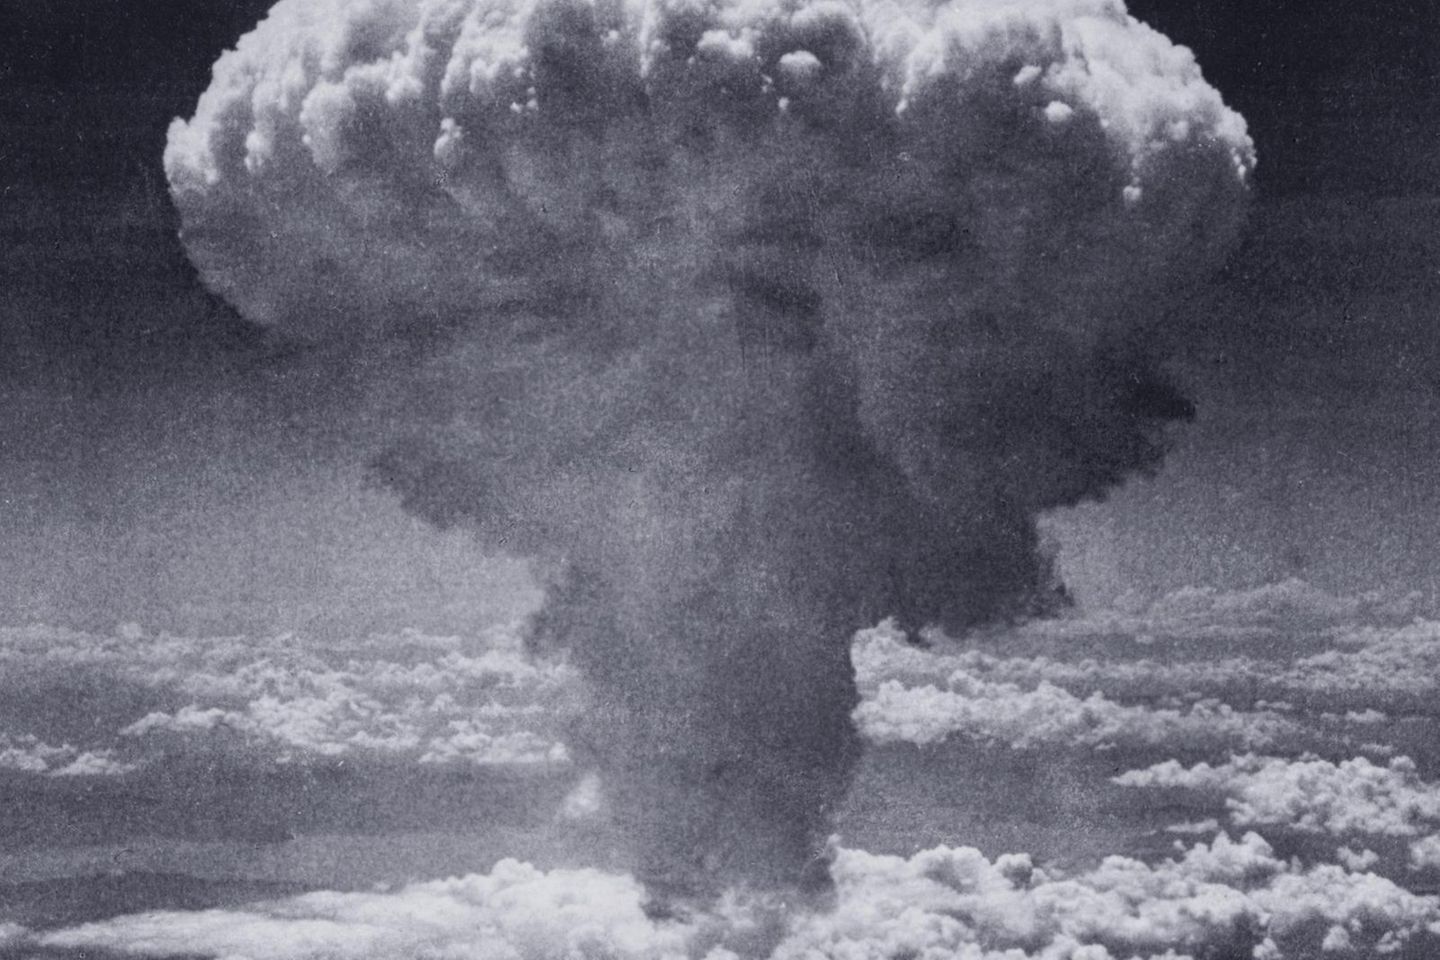 "Manhattan-Projekt": Der Beginn eines neuen Zeitalters: Warum Enrico Fermi an der Atombombe baute